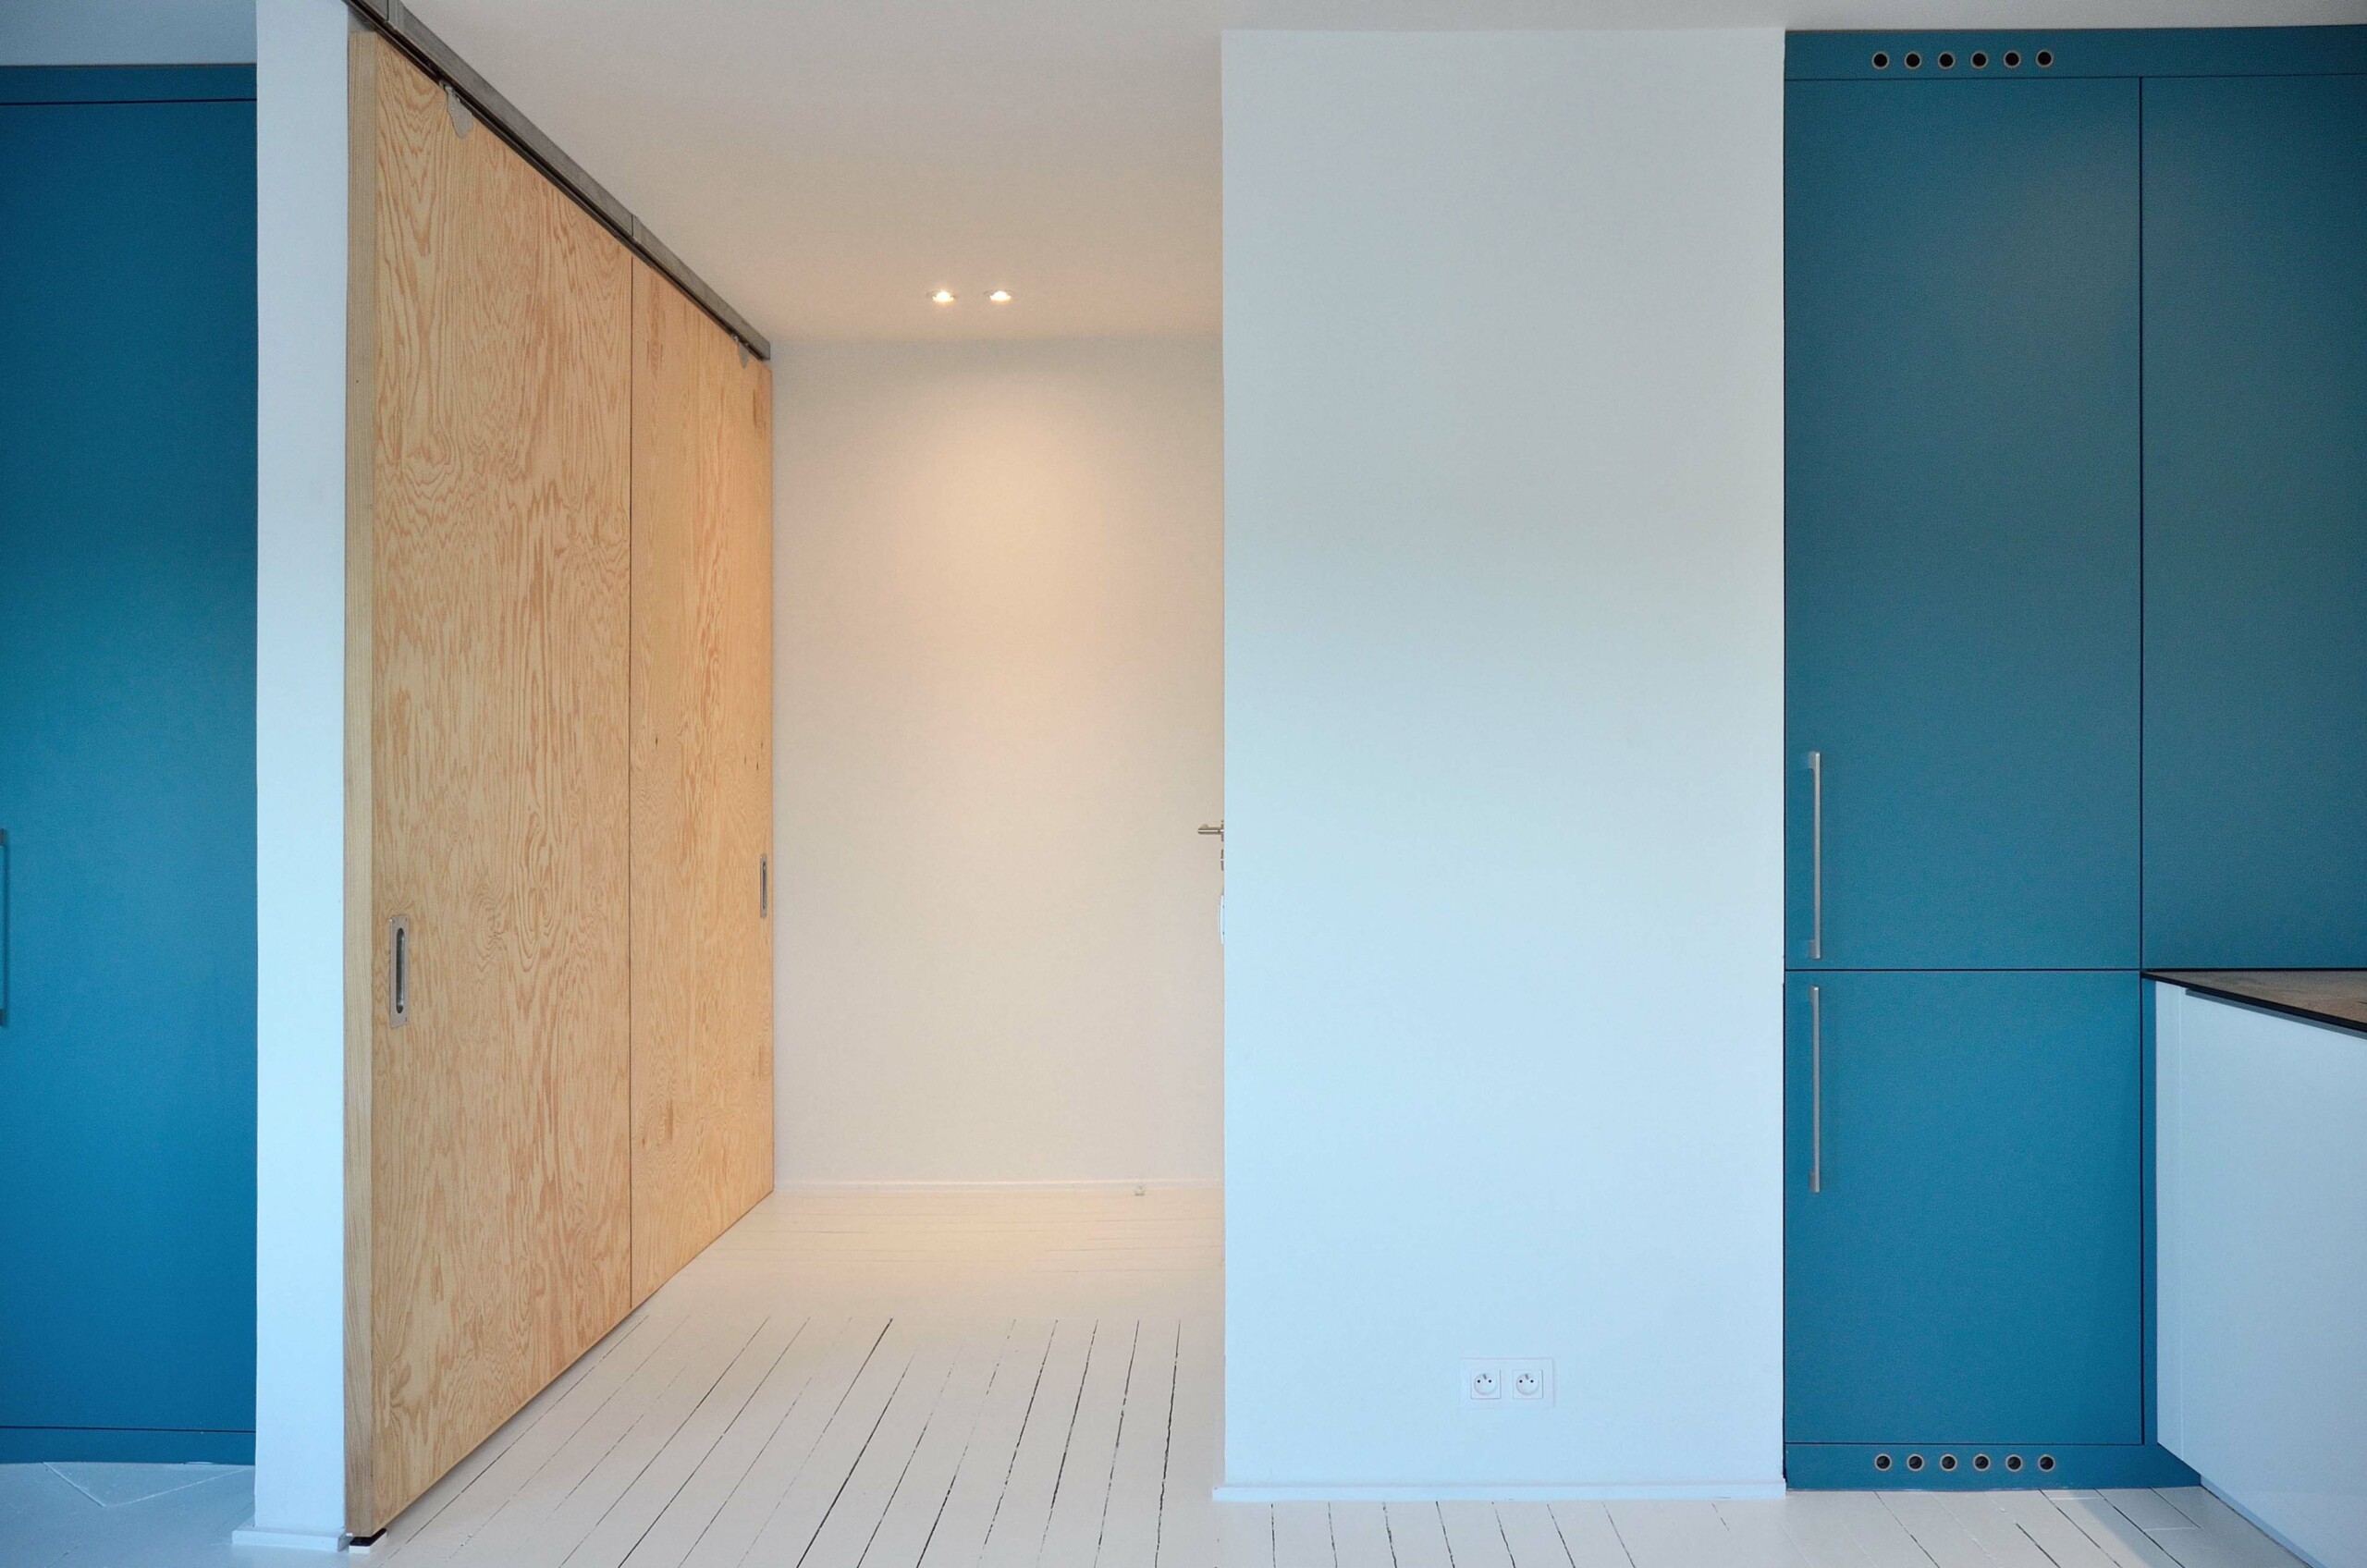 Projet Sully : aménagement d’un studio de 35m² - cuisine, Agence Oz by cath, architecture d'intérieur